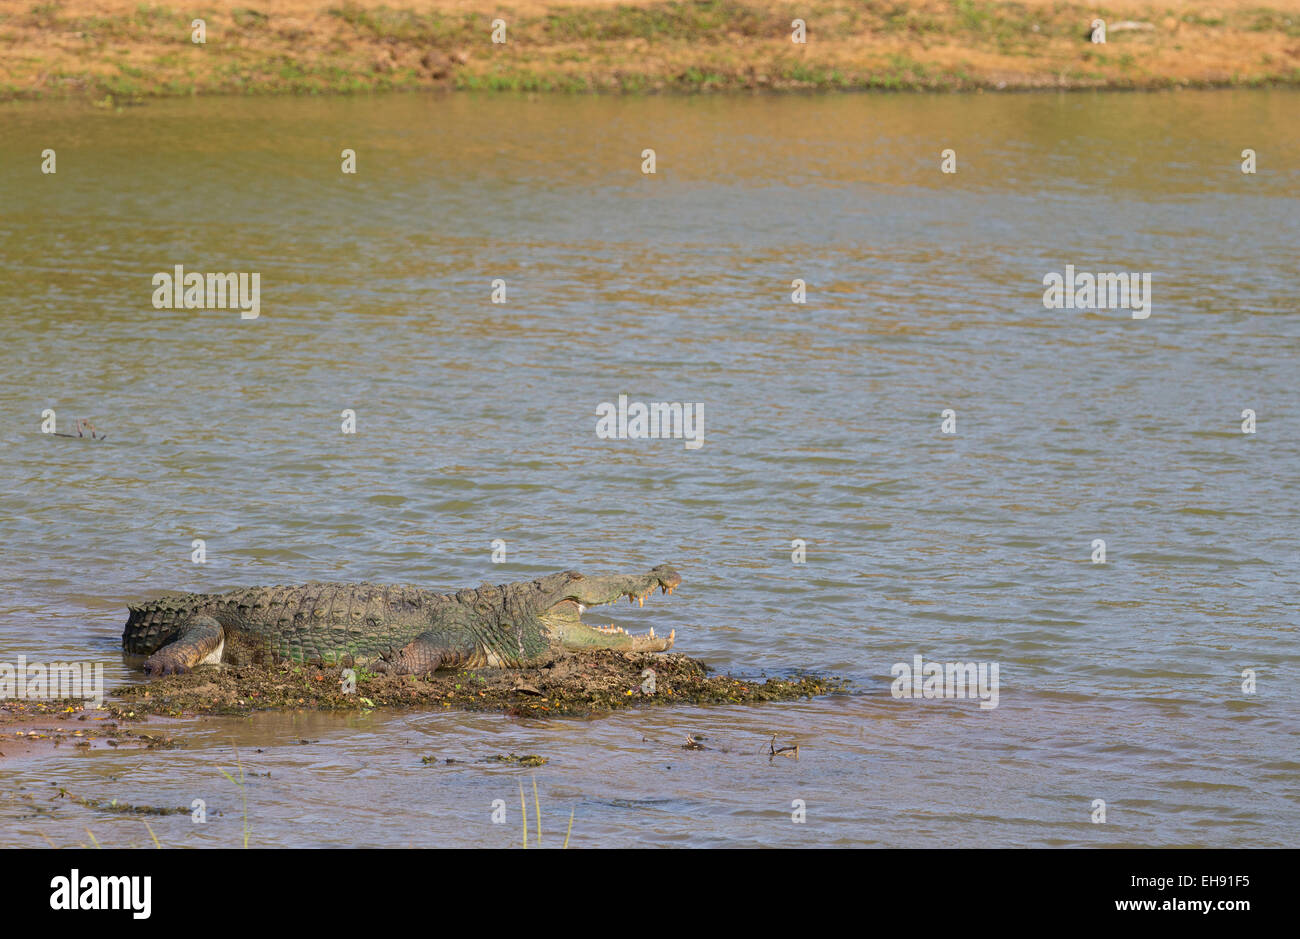 Large Mugger Crocodile (Crocodylus palustris), Yala National Park, Sri Lanka Stock Photo